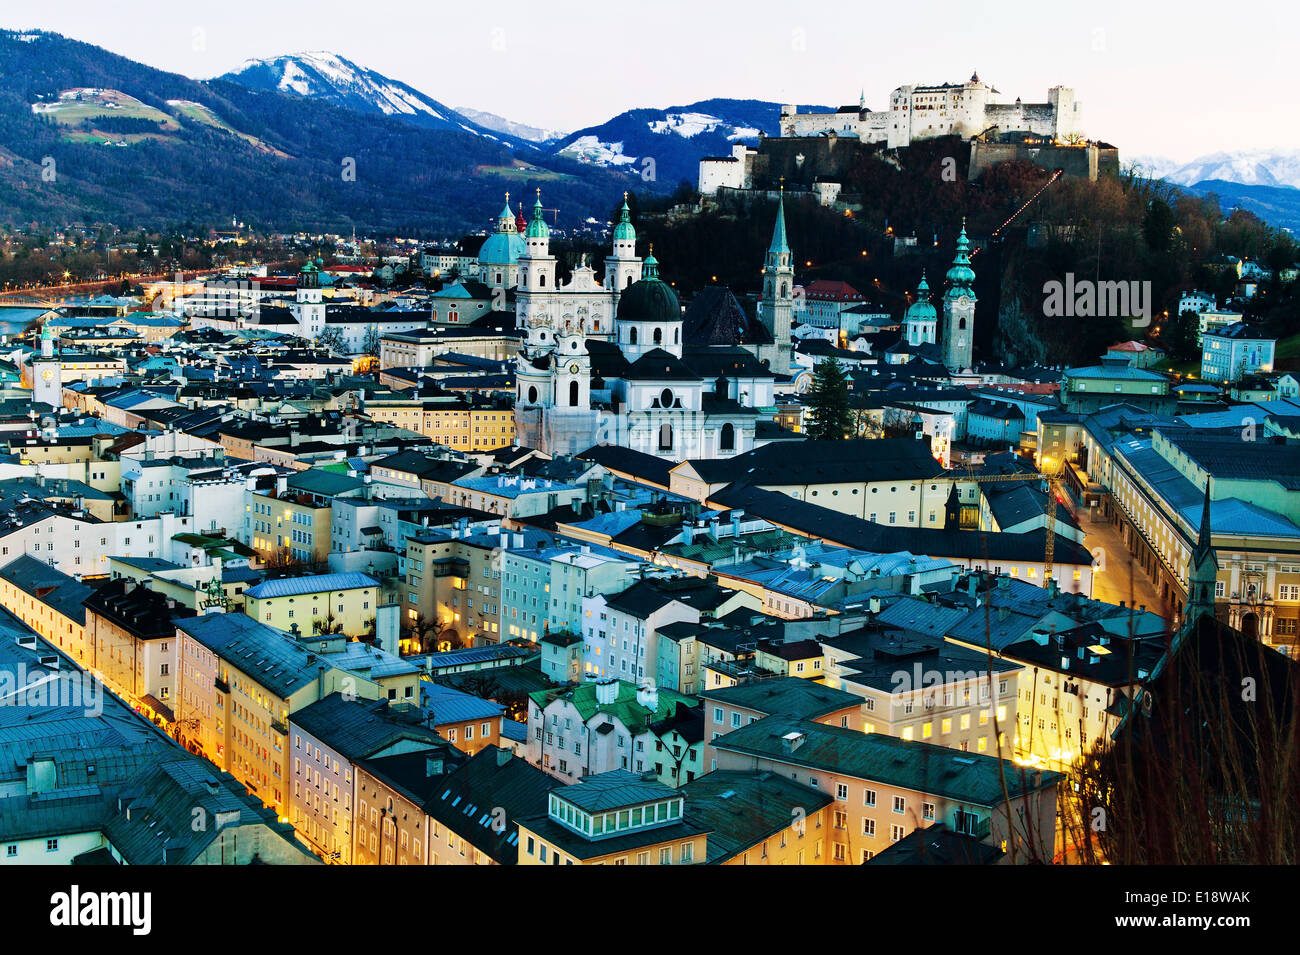 Eine Stadt Ansicht der Stadt Salzburg in Österreich.. Altstadt und Festung Hohensalzburg Foto Stock